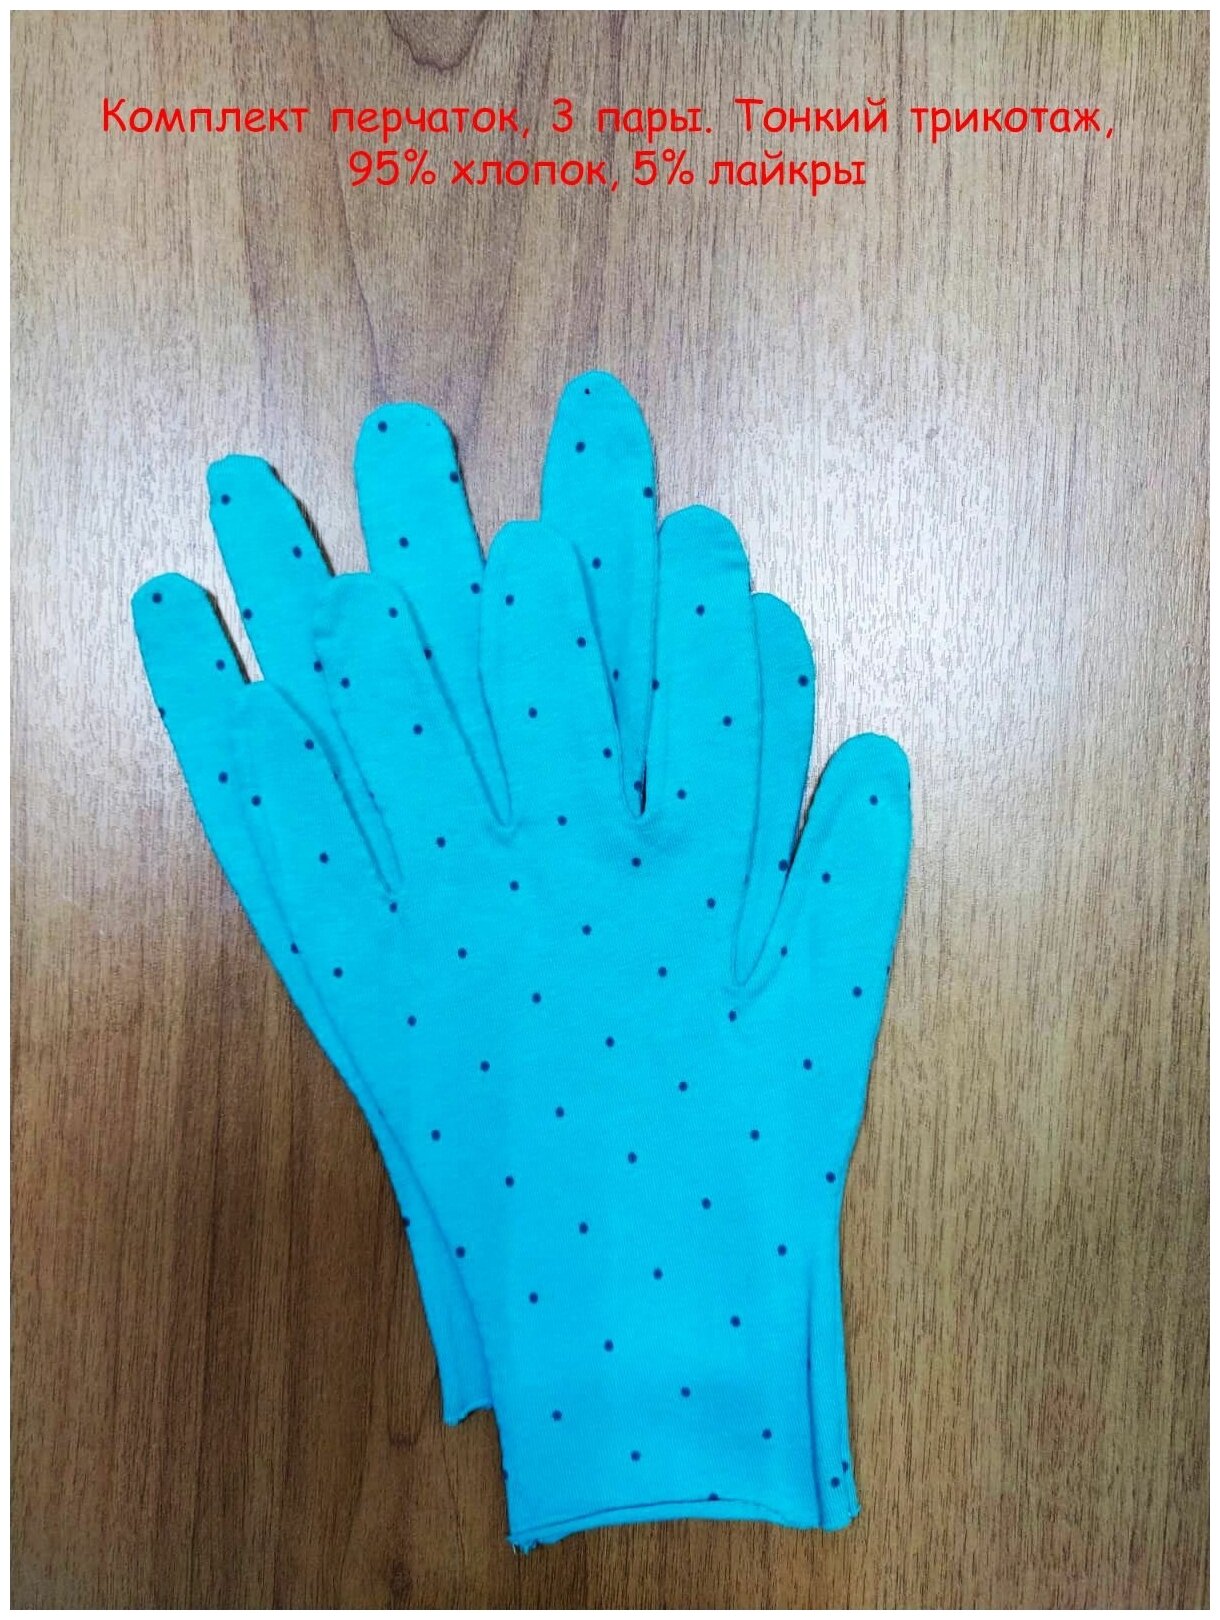 Тонкие хлопковые перчатки, размер S,3 пары.